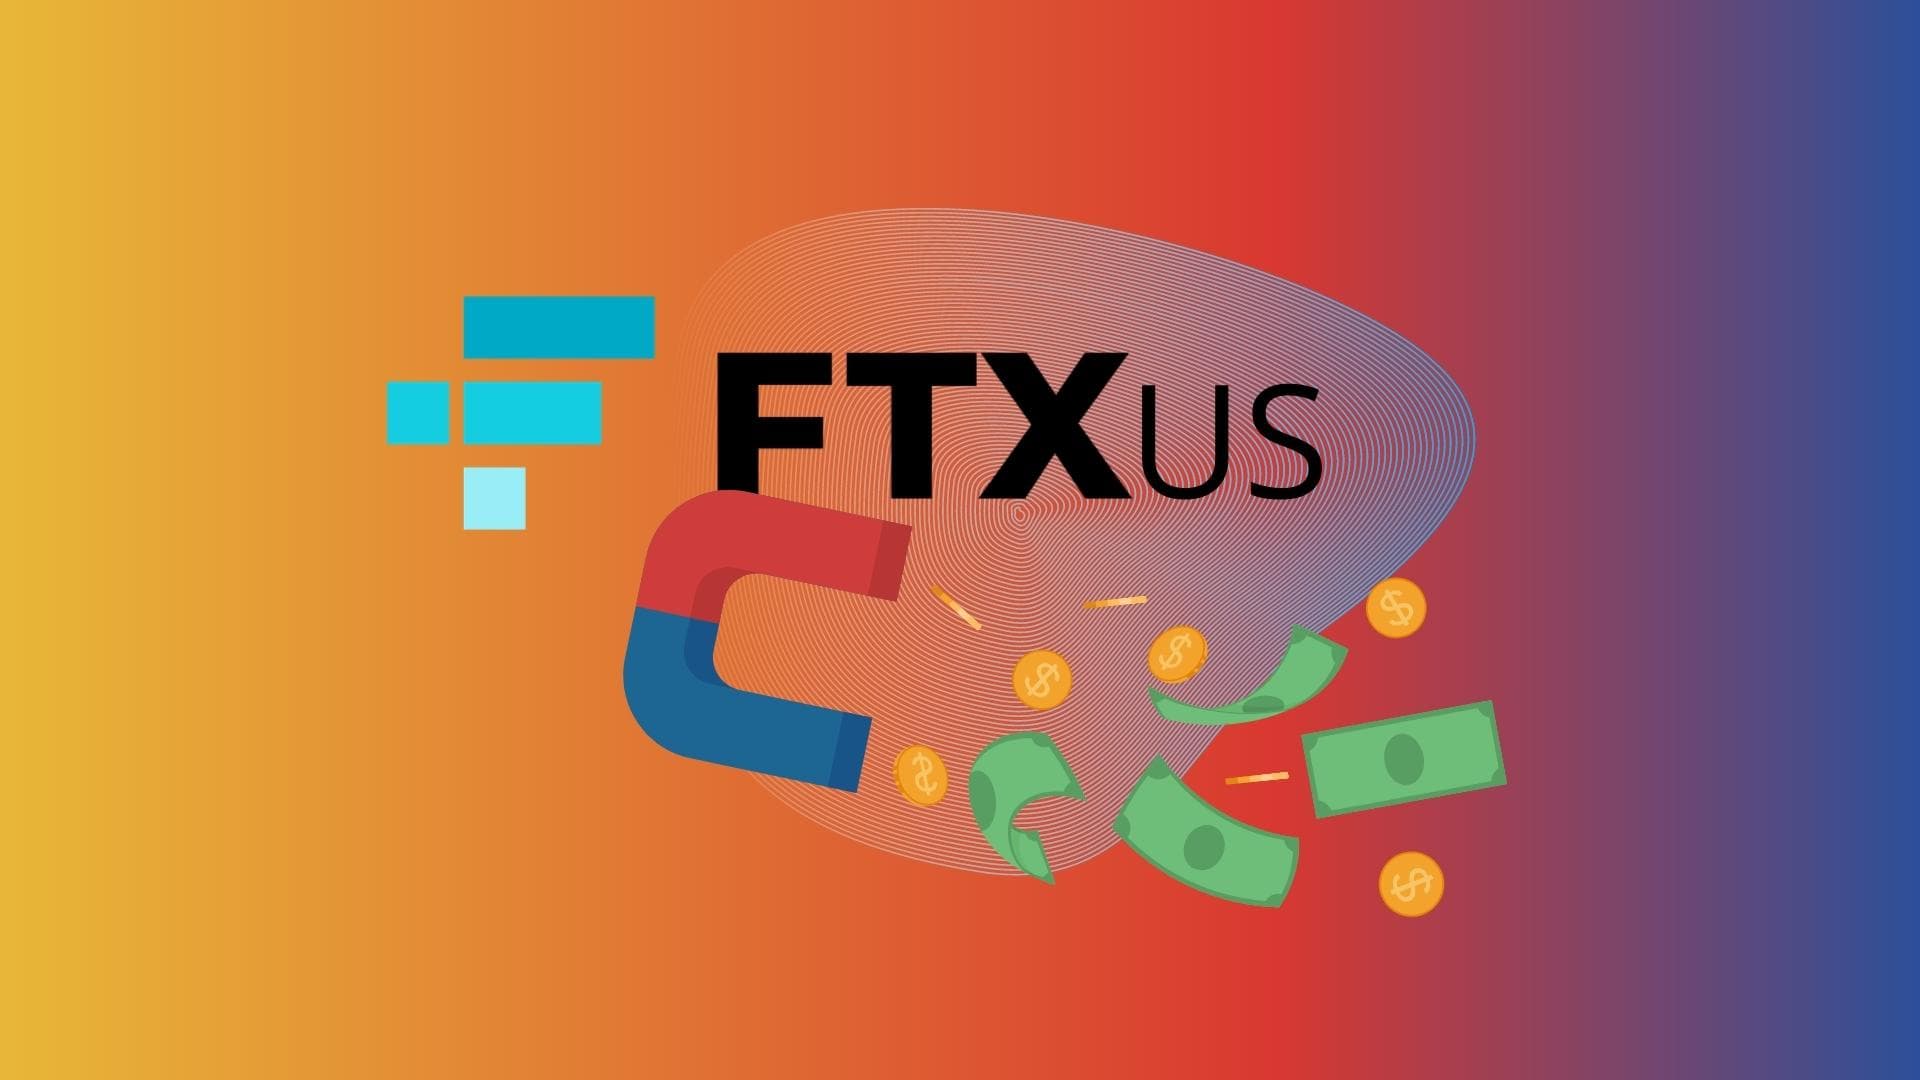 FTX US привлекла $400 млн инвестиций.